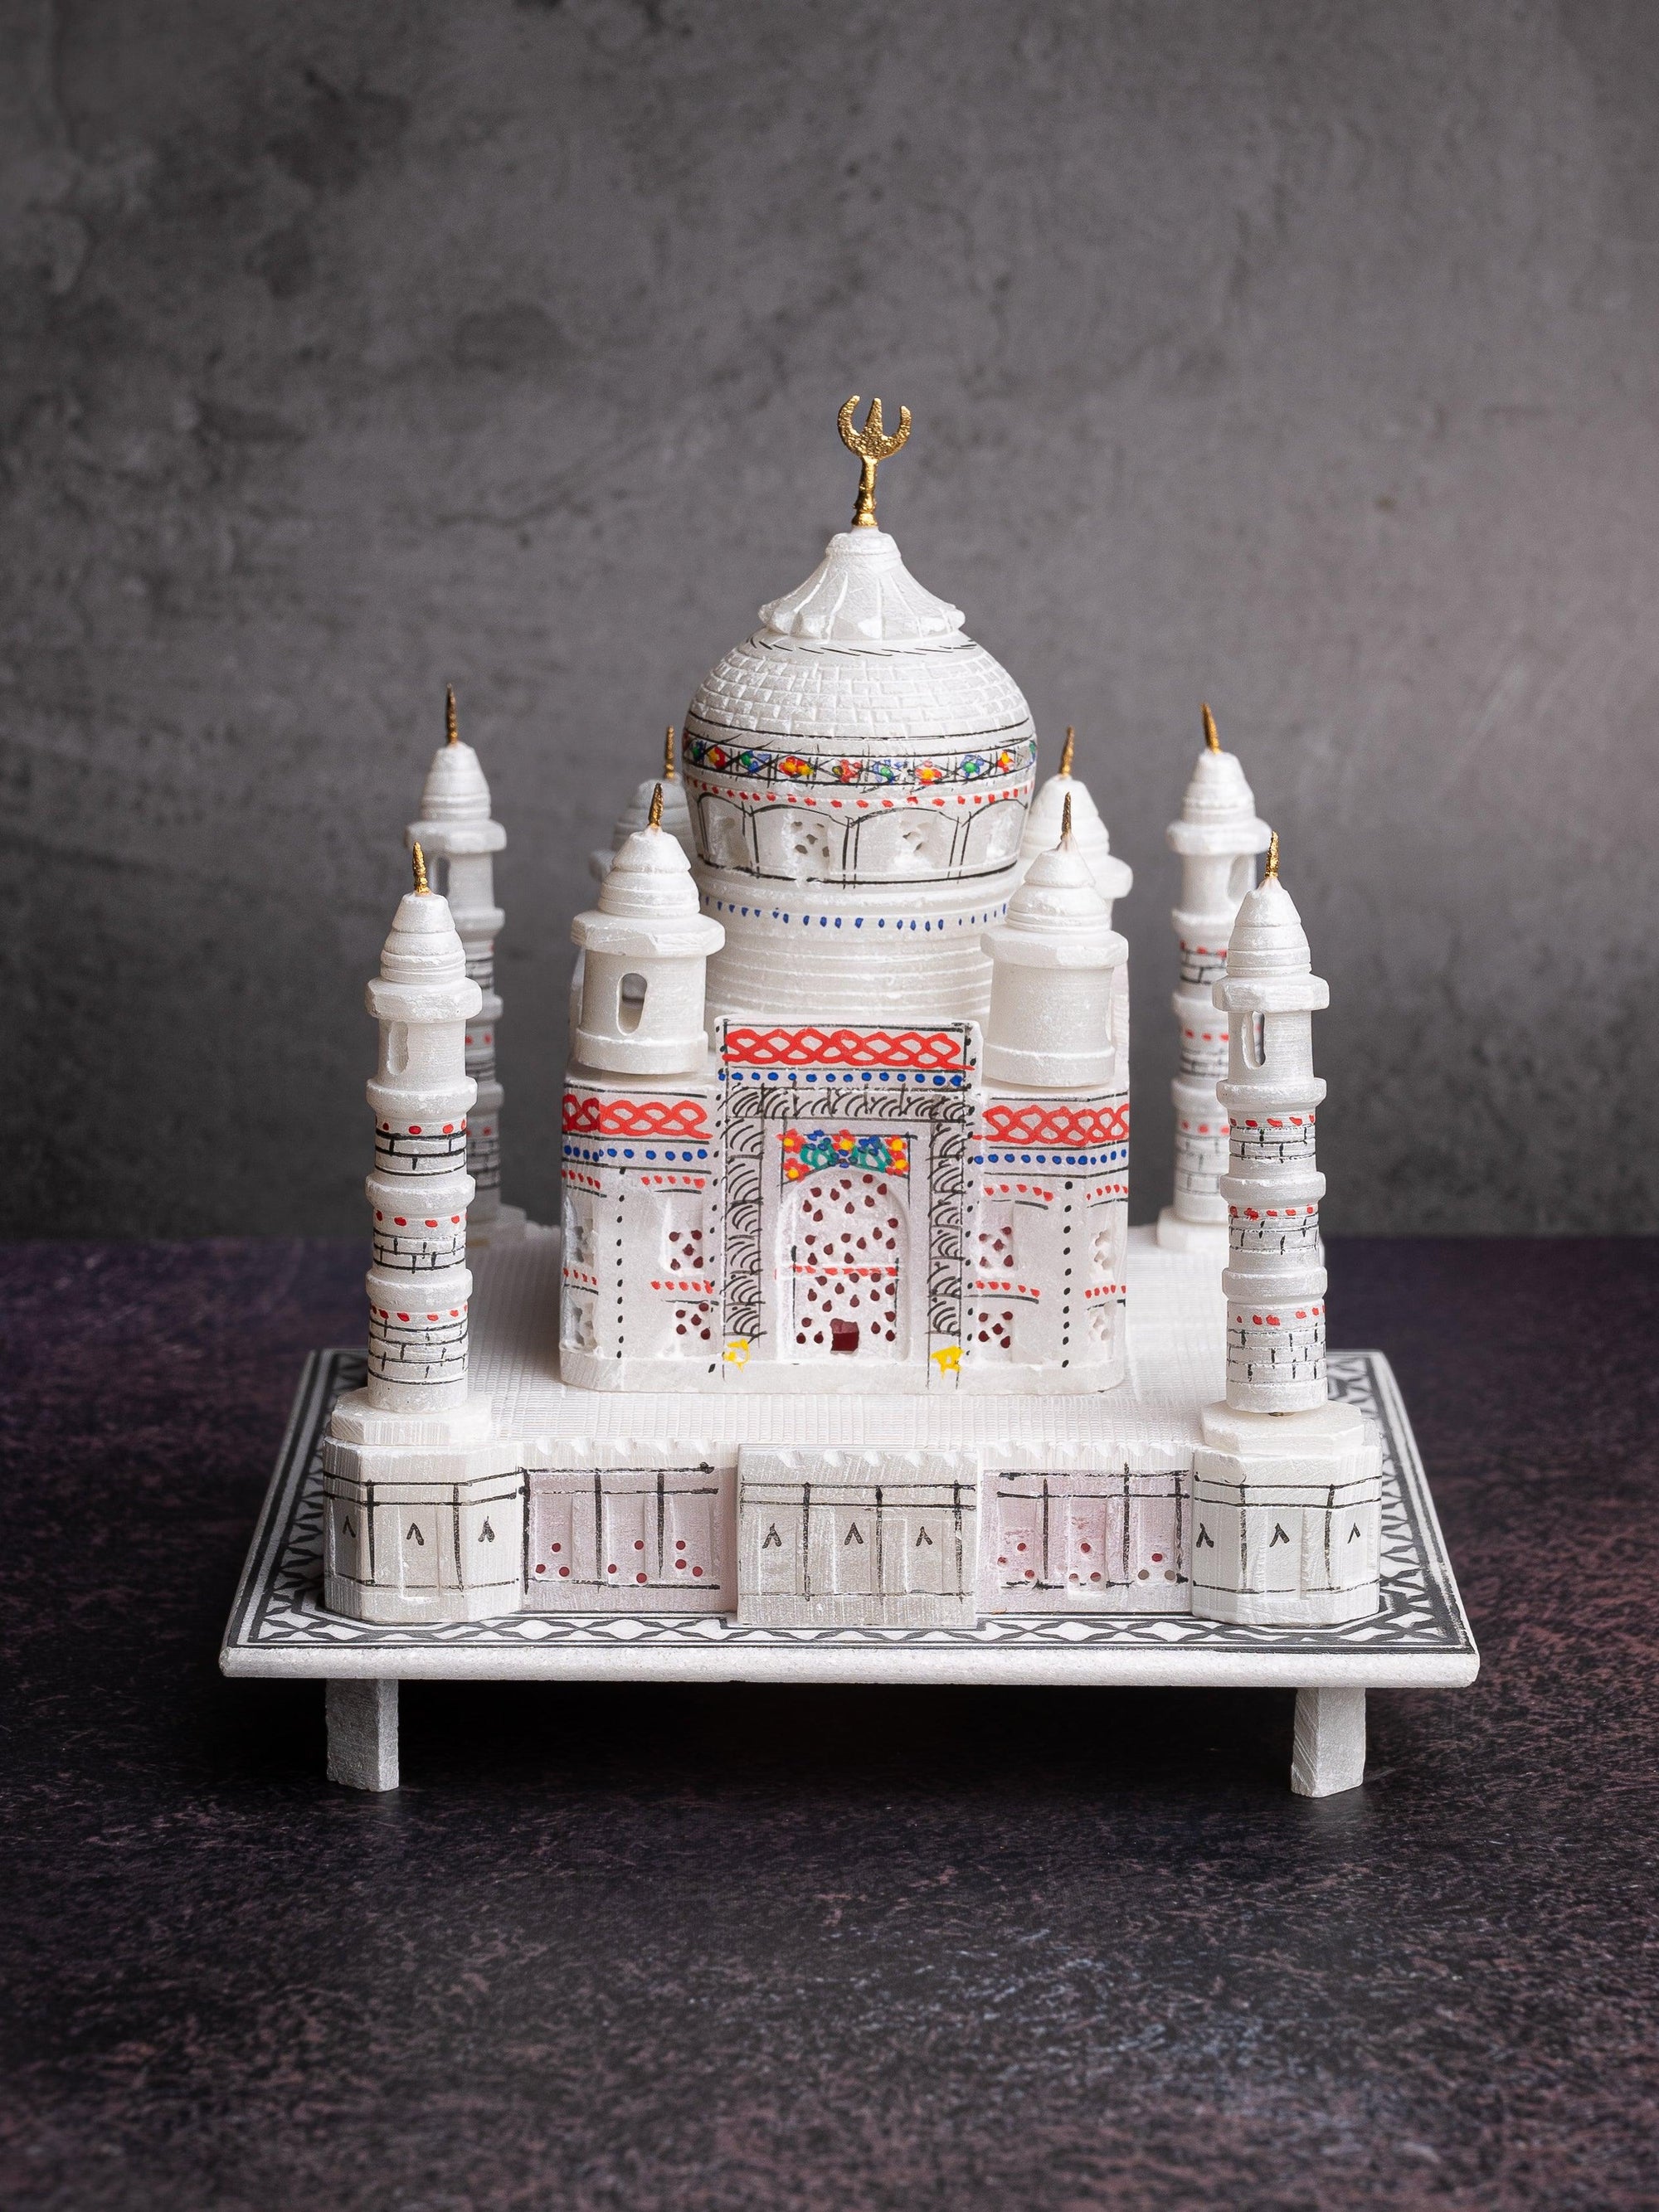 The Taj Mahal Wedding Cake - CakeCentral.com